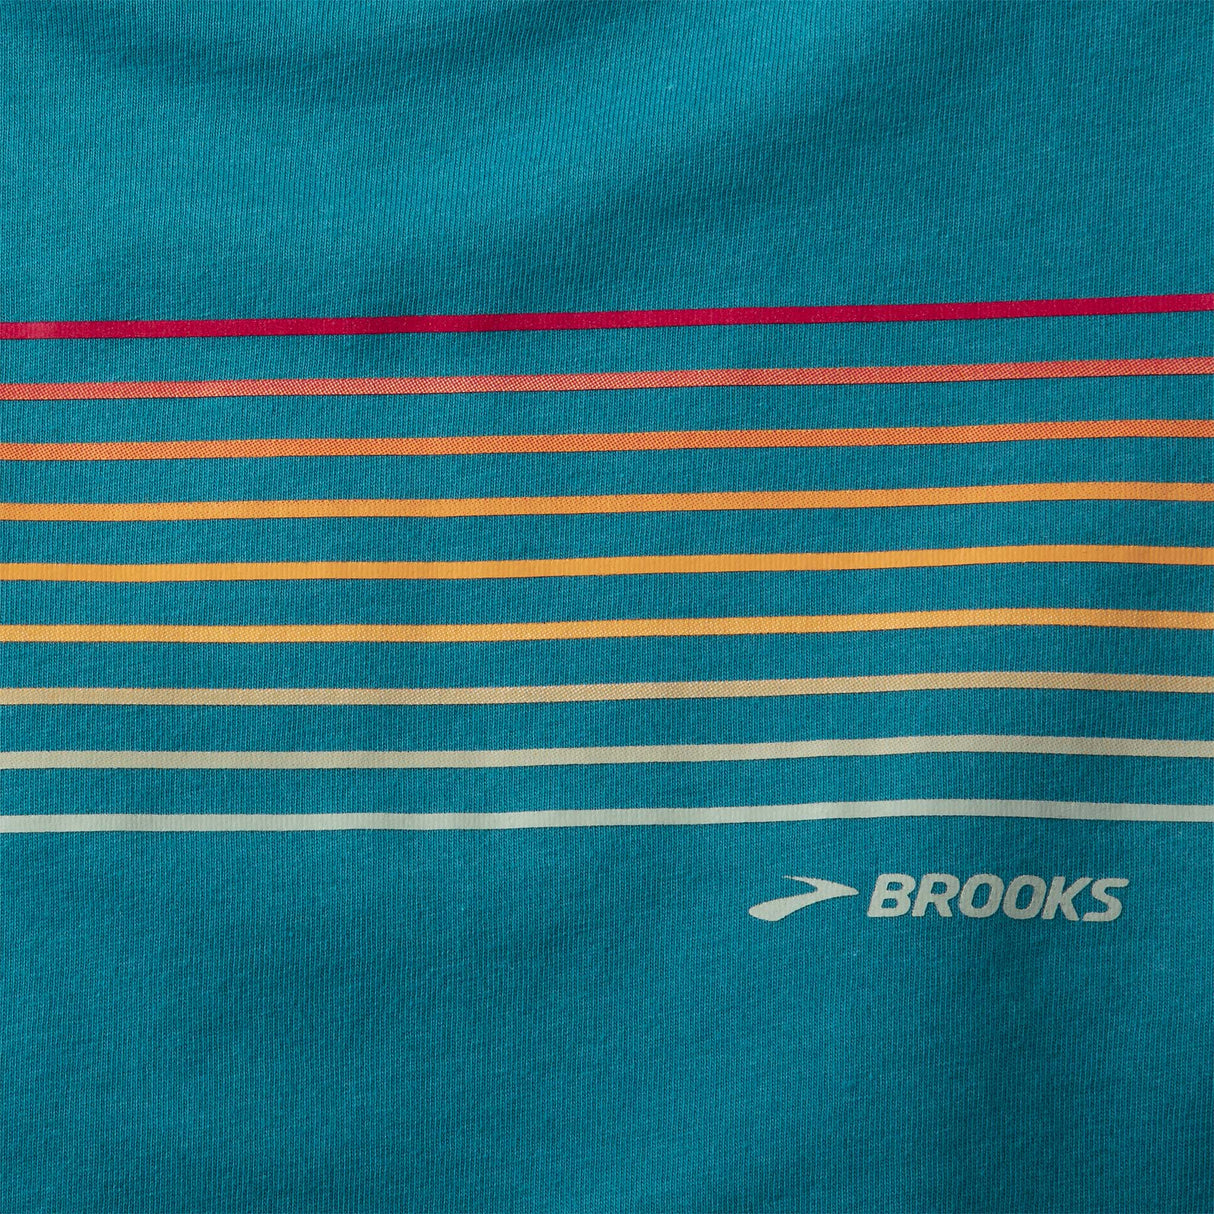 Brooks Distance 2.0 chandail manches longues de course femme details-Heather Lagoon/Gradient Stripe